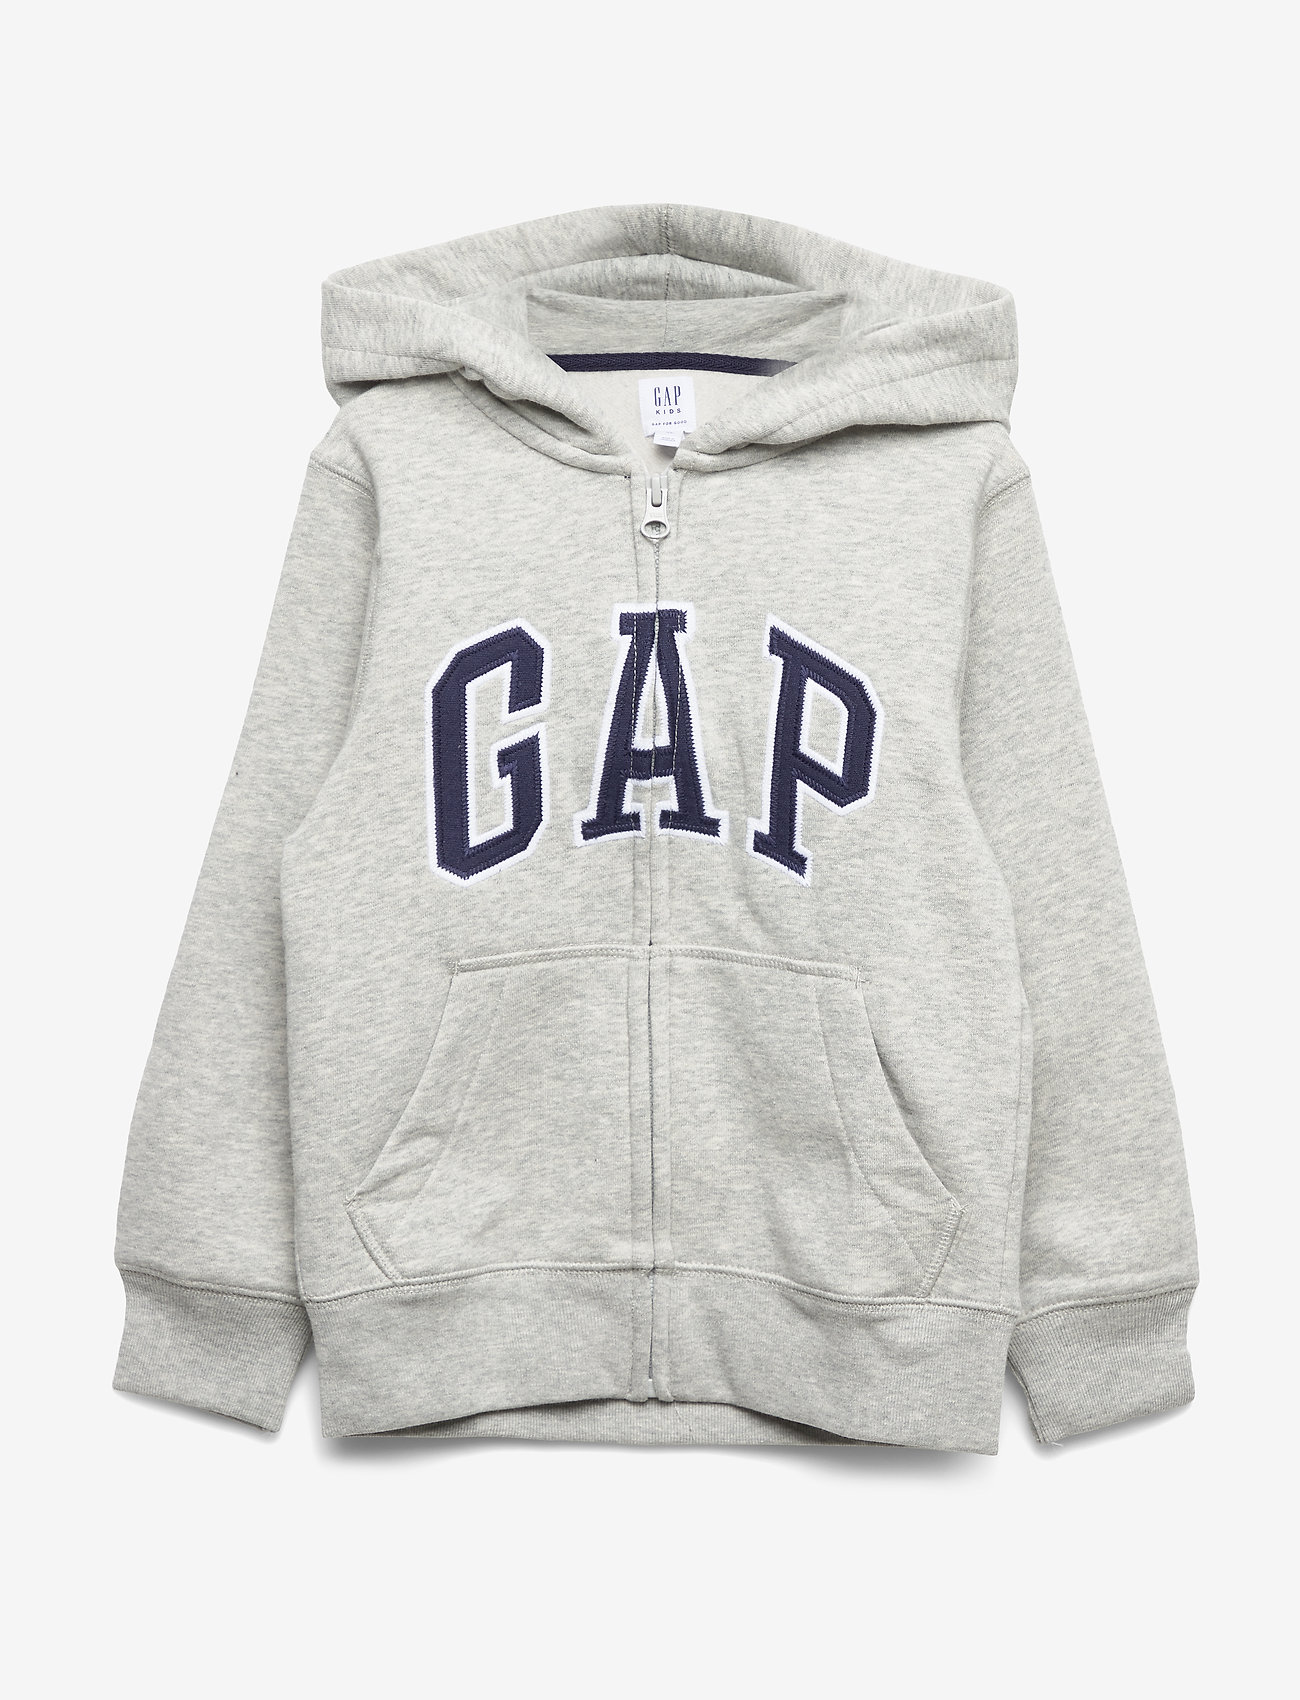 grey gap hoodie